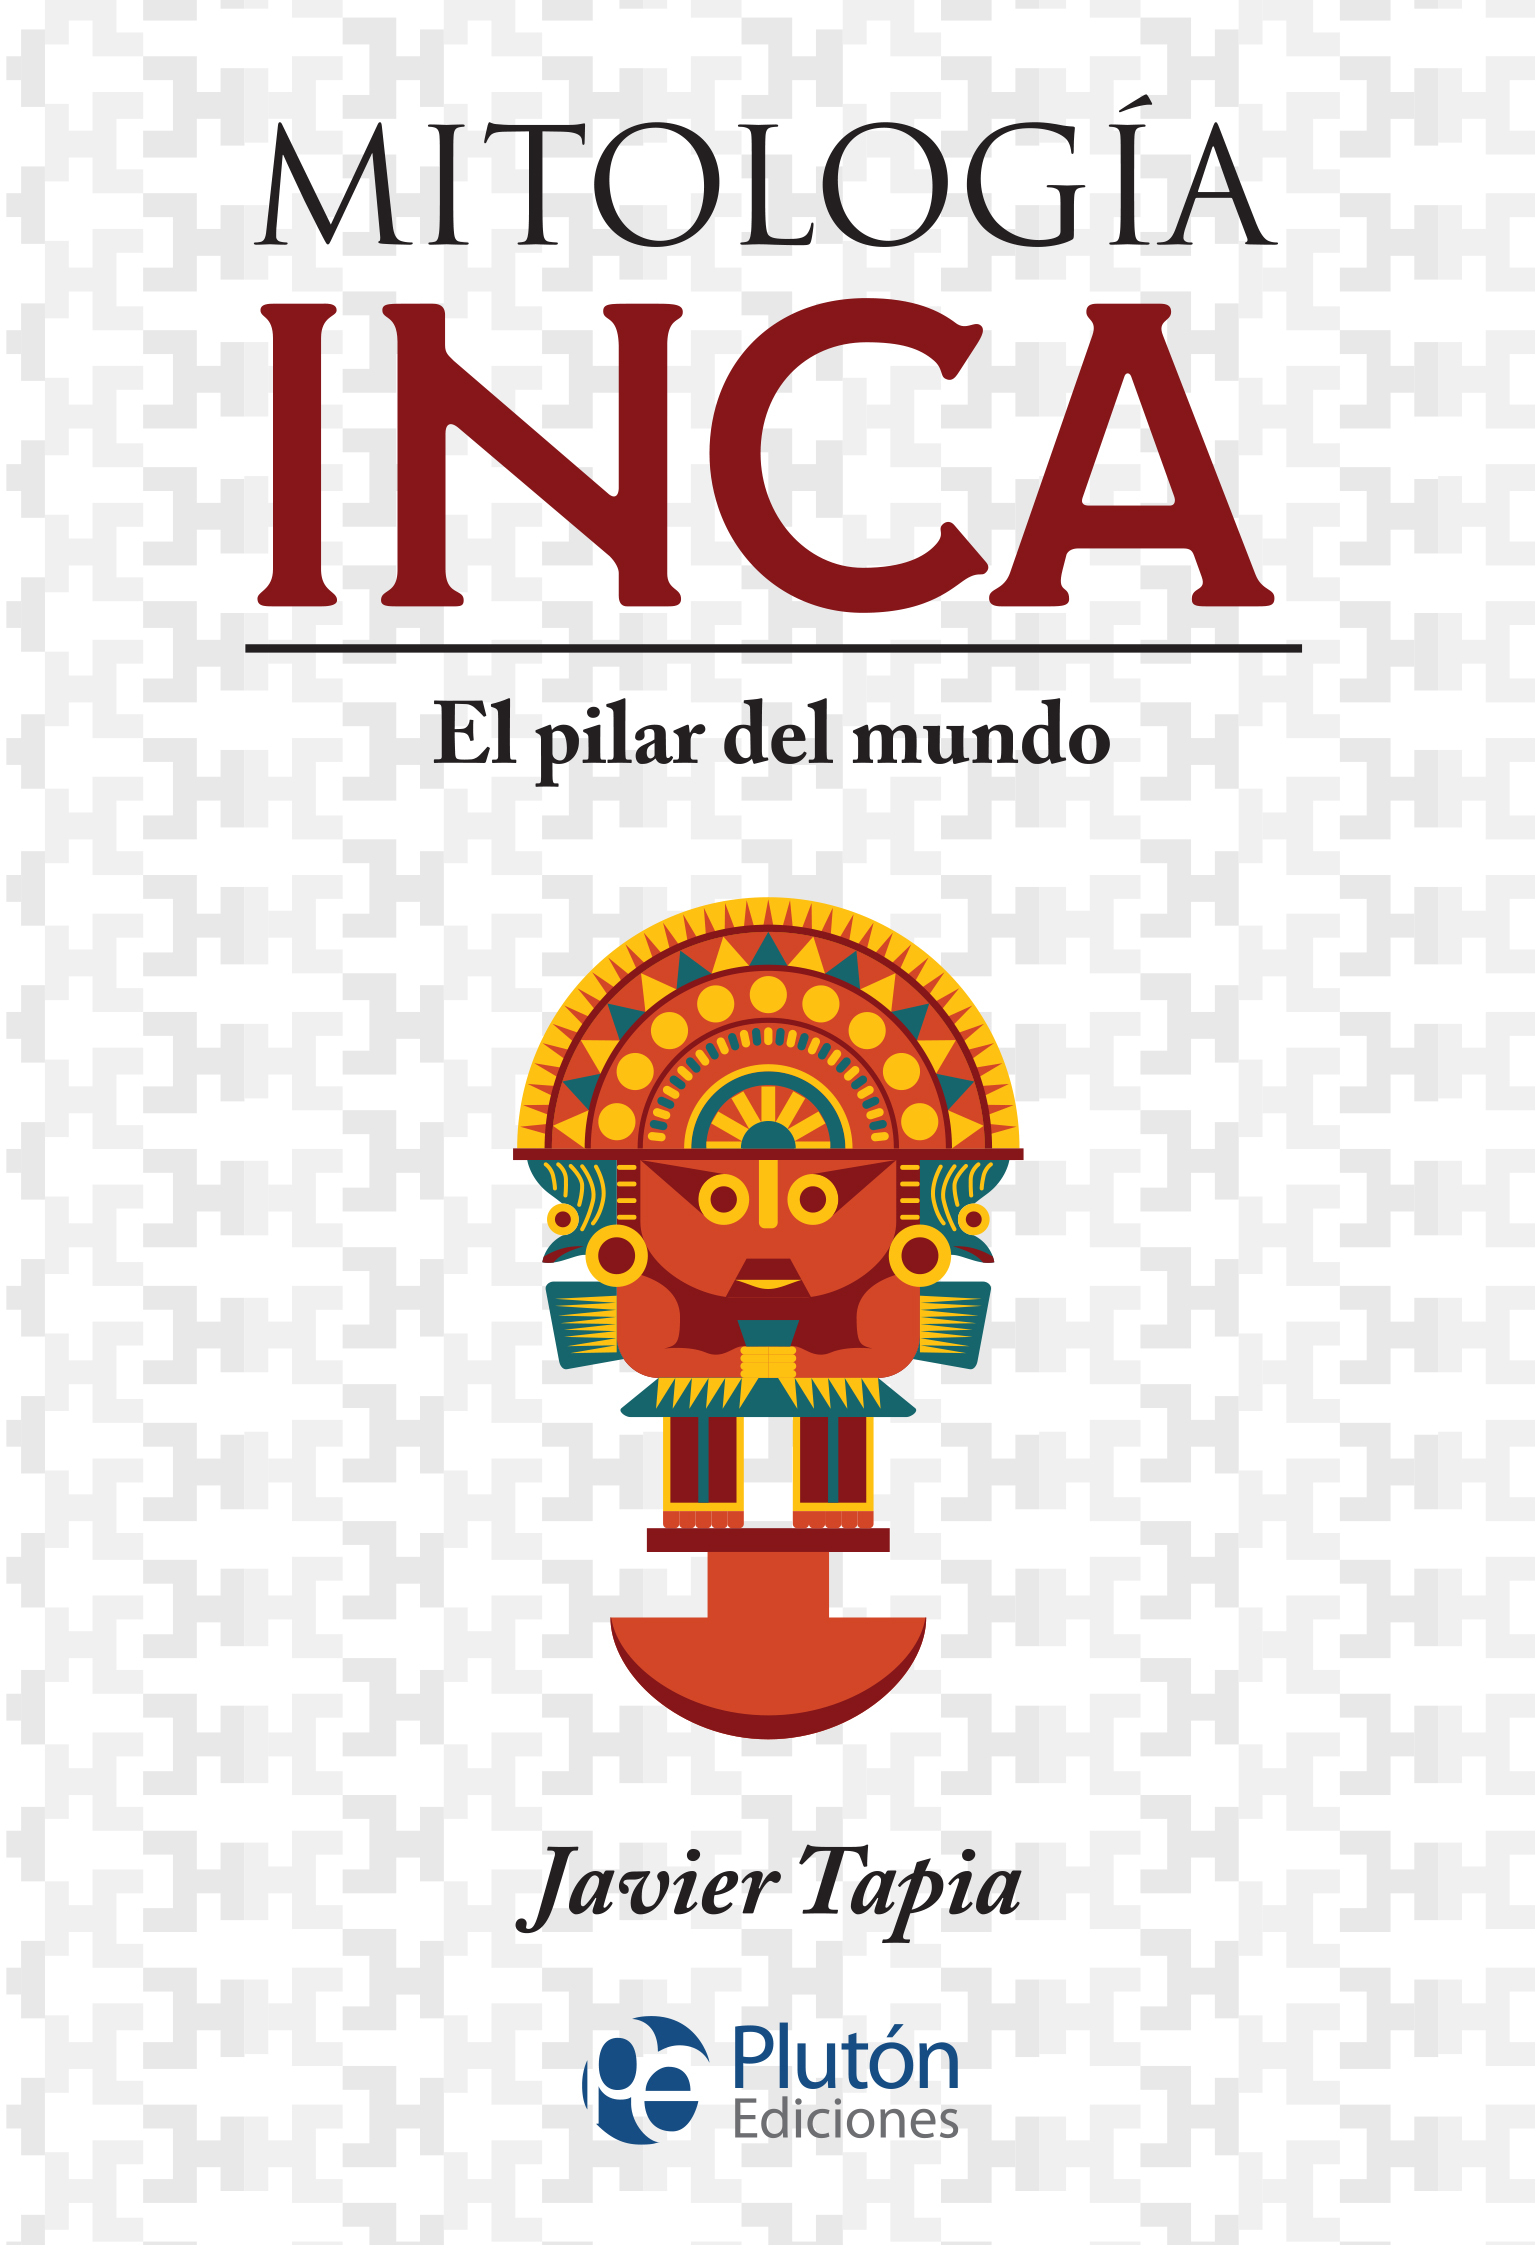 cover_-_Mitologia_Inca_-_MYTHOS_2019_-_Maqueta_-_PLASTIFICADO_MATE.jpg